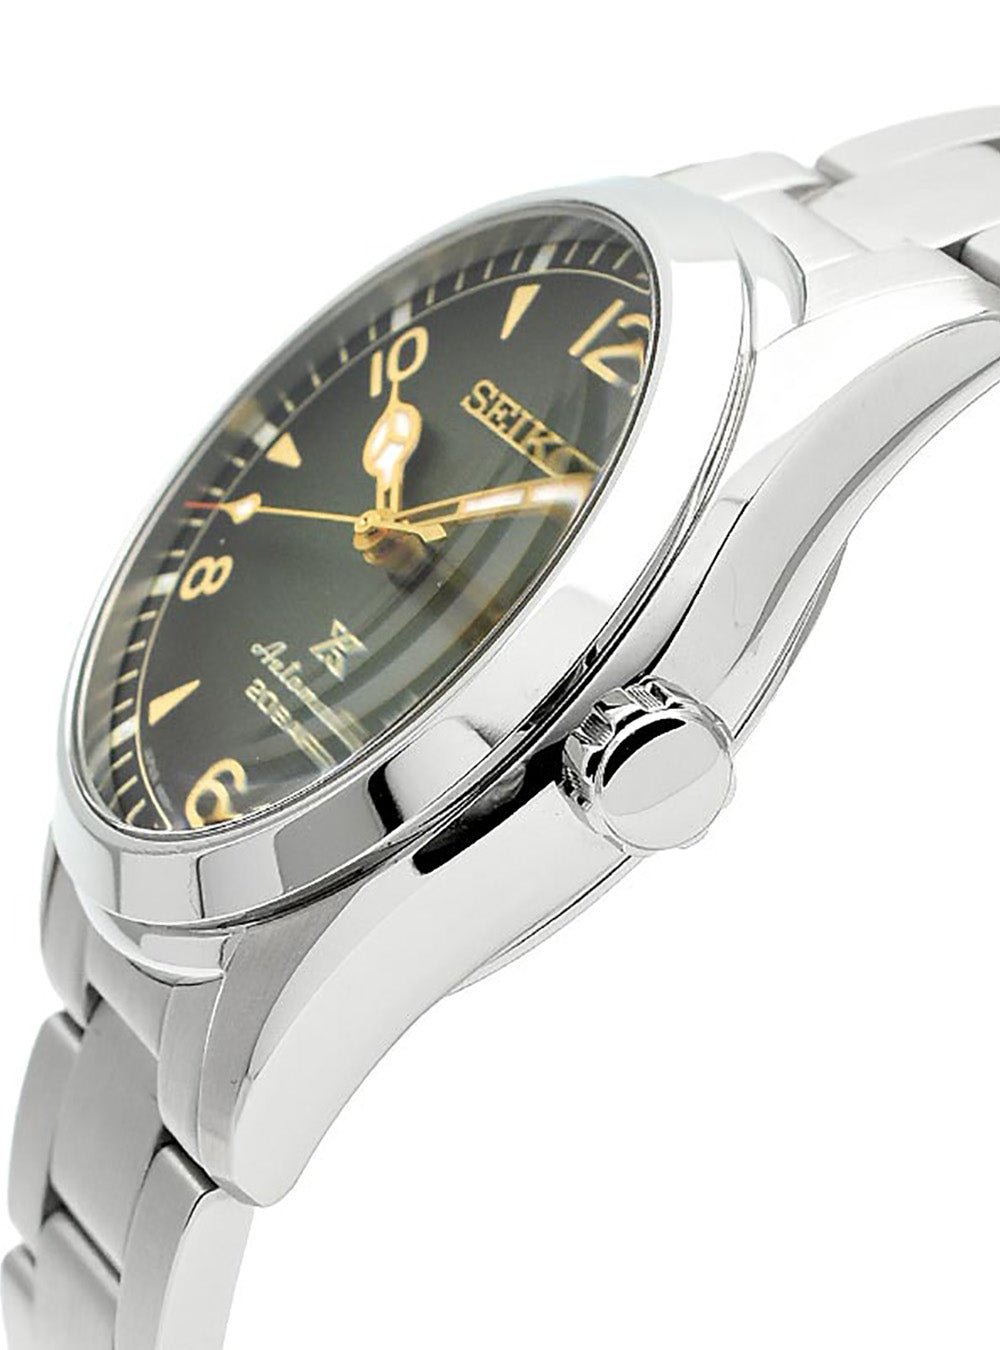 SEIKO SBDC115 プロスペックス - 腕時計(アナログ)